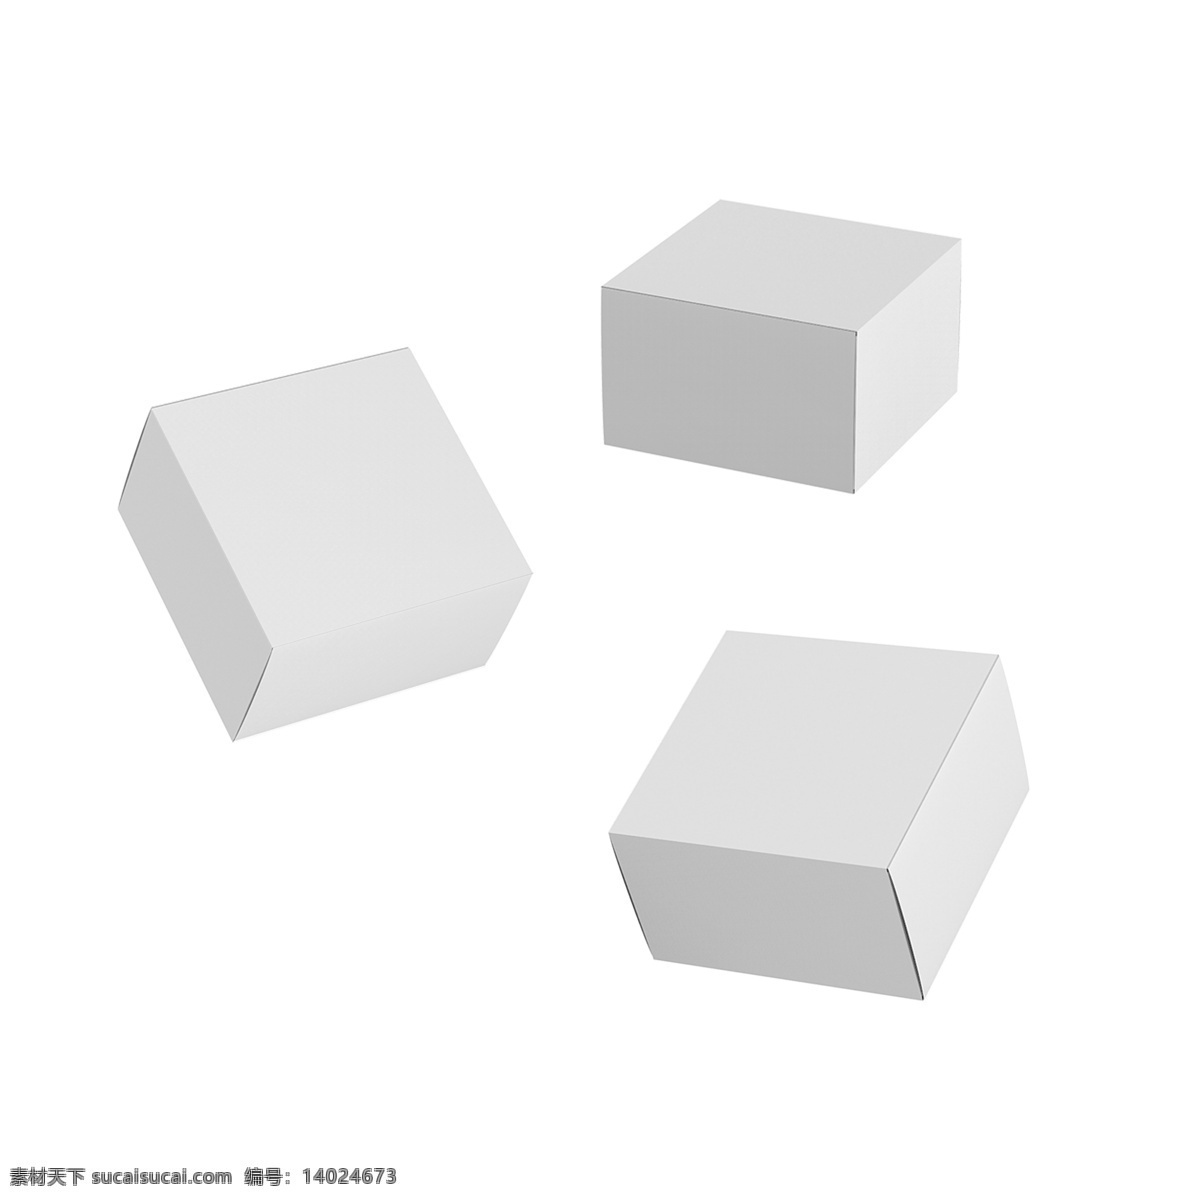 原创 白色 空白 方 盒子 纸盒 立体 空间 方盒子 几何